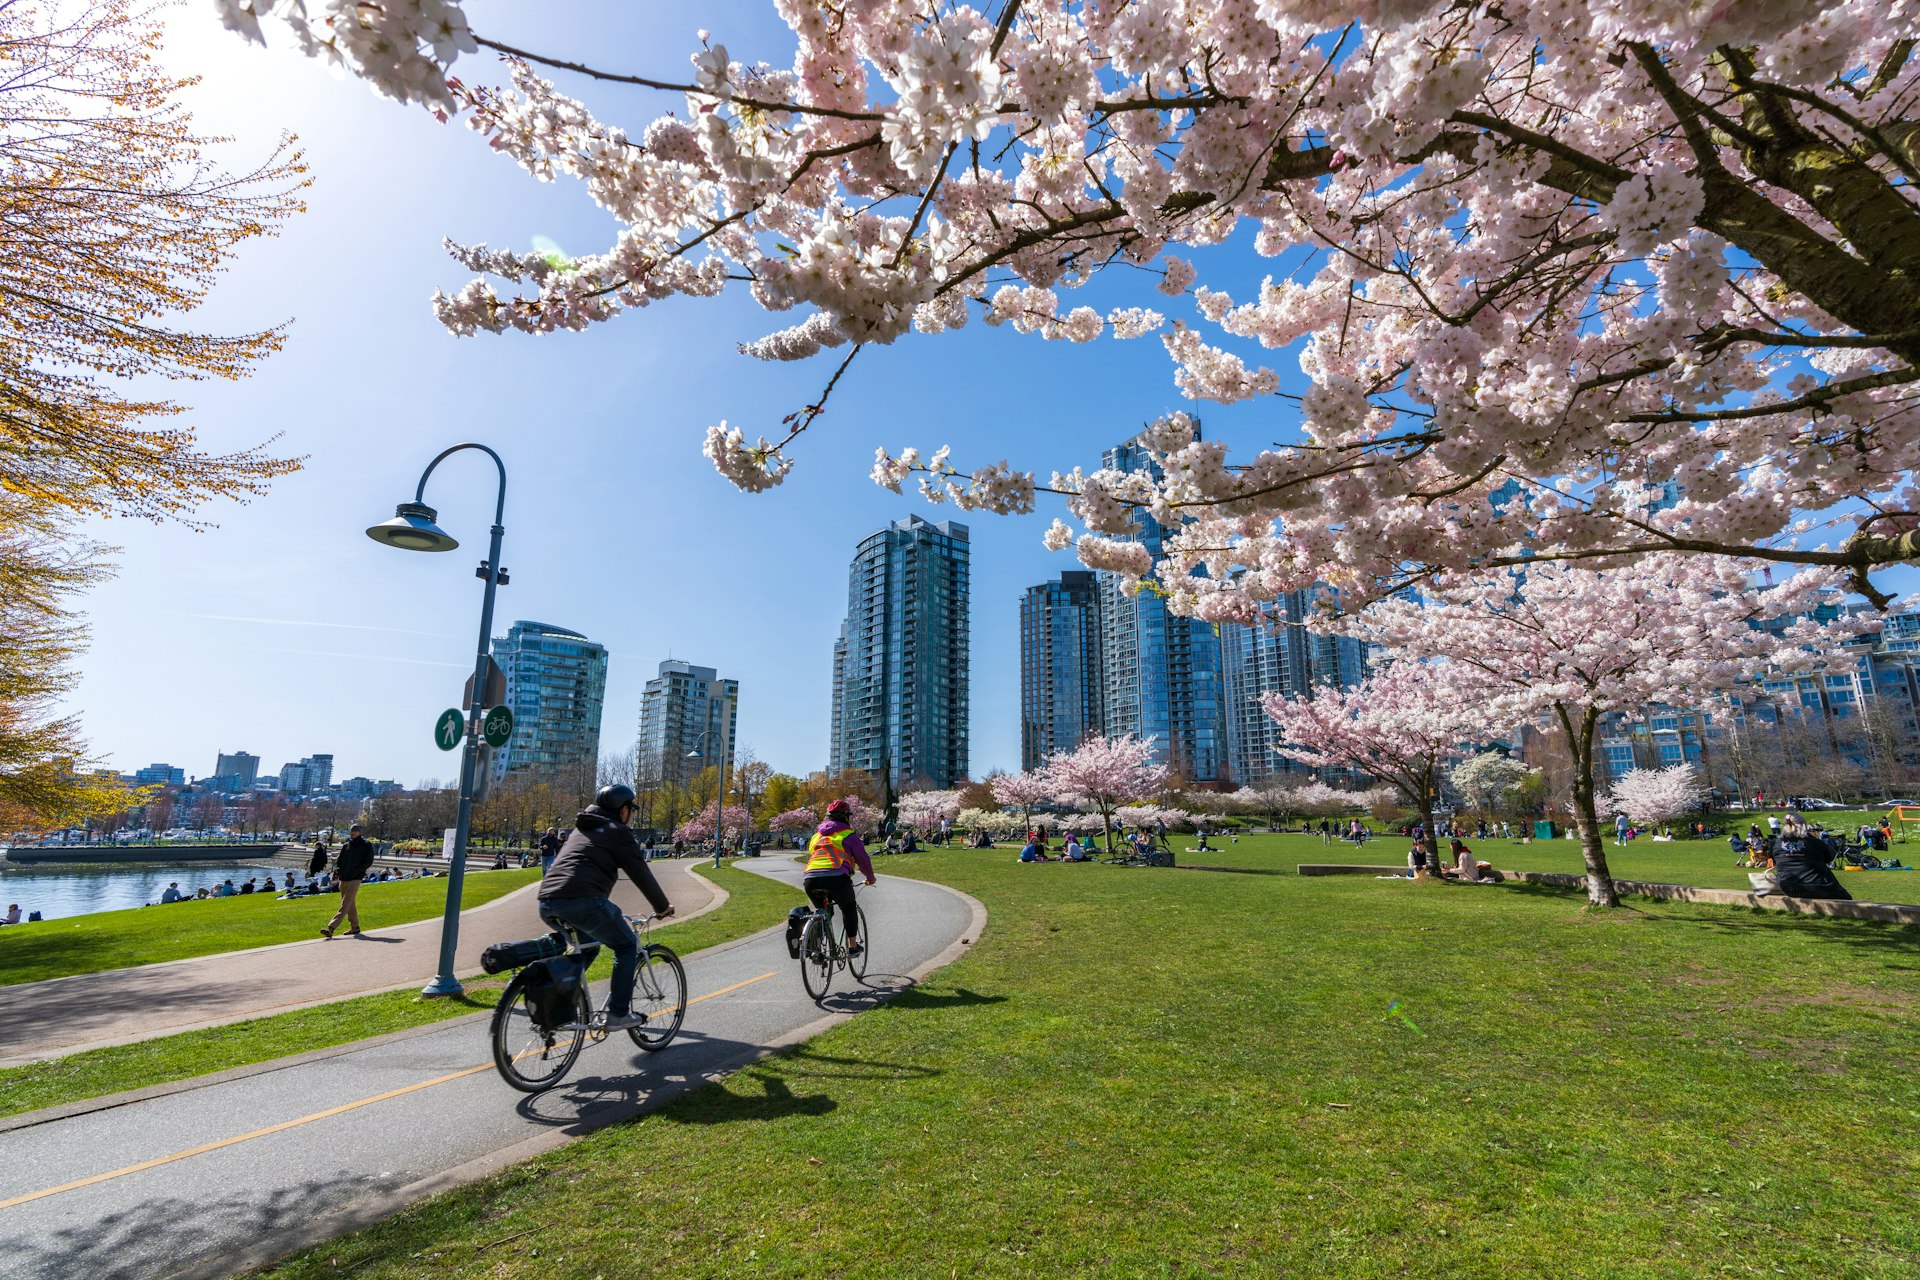 Ciclistas andam de bicicleta por um parque com trilhas ladeadas por cerejeiras em flor